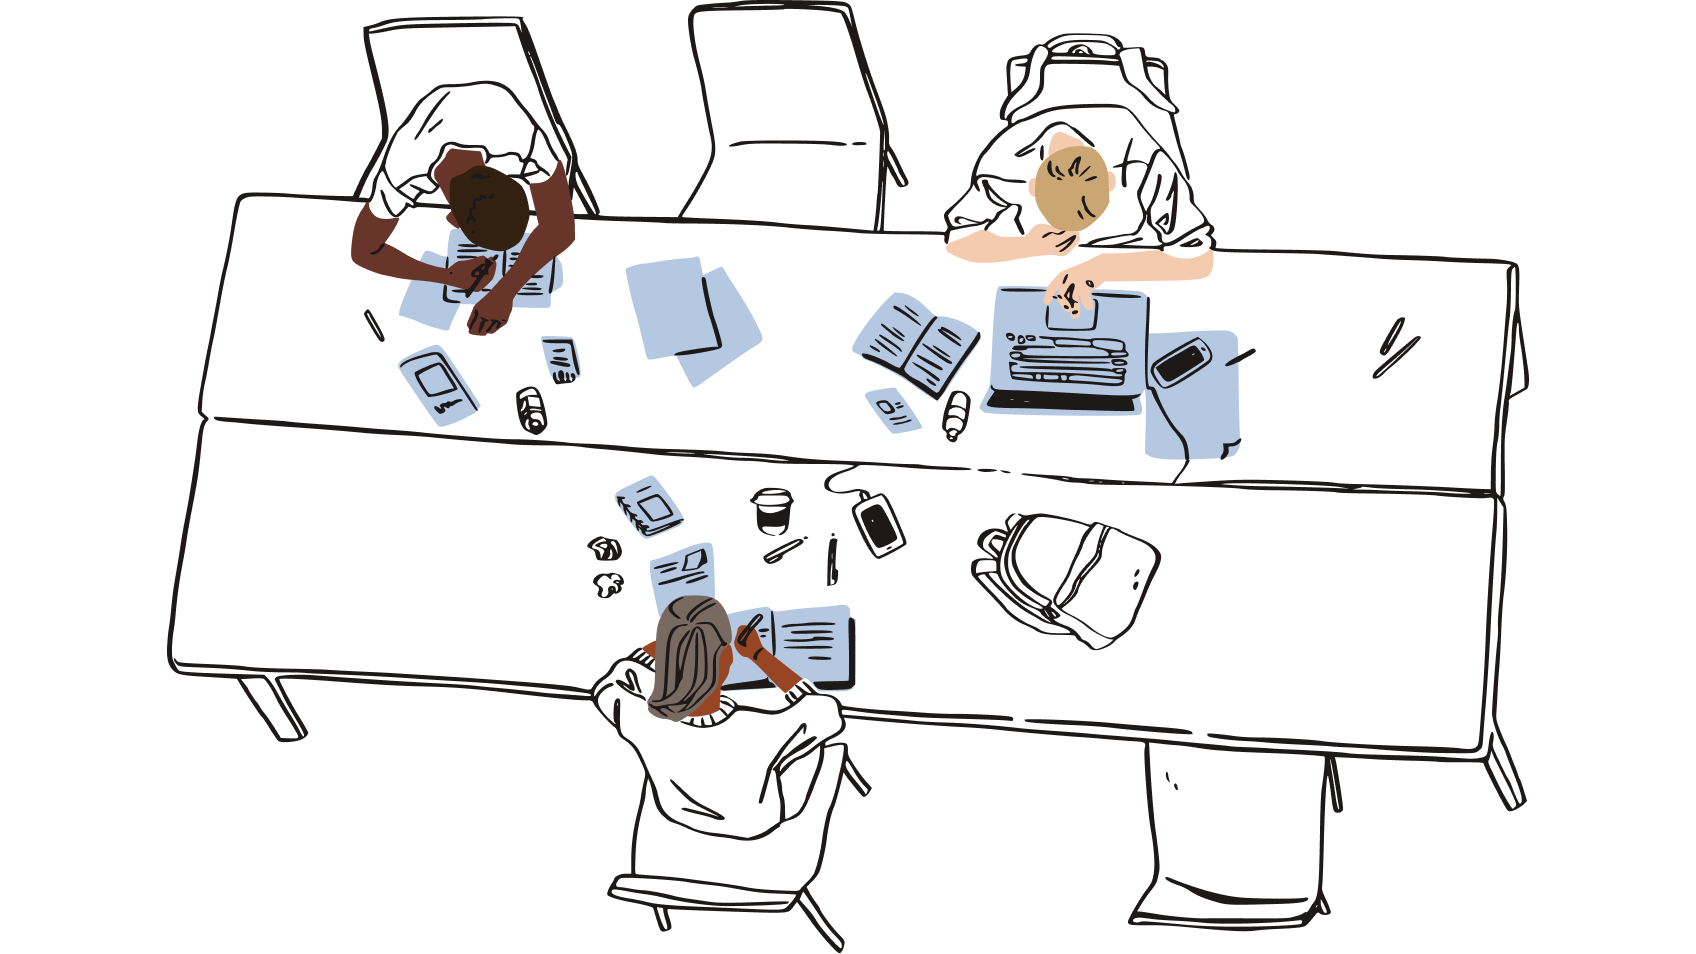 Ilustração de um grupo de pessoas sentadas em um espaço de trabalho compartilhado, cercado por pedaços de papel, representando o risco de deixar cópias físicas de senhas perto de sua mesa.